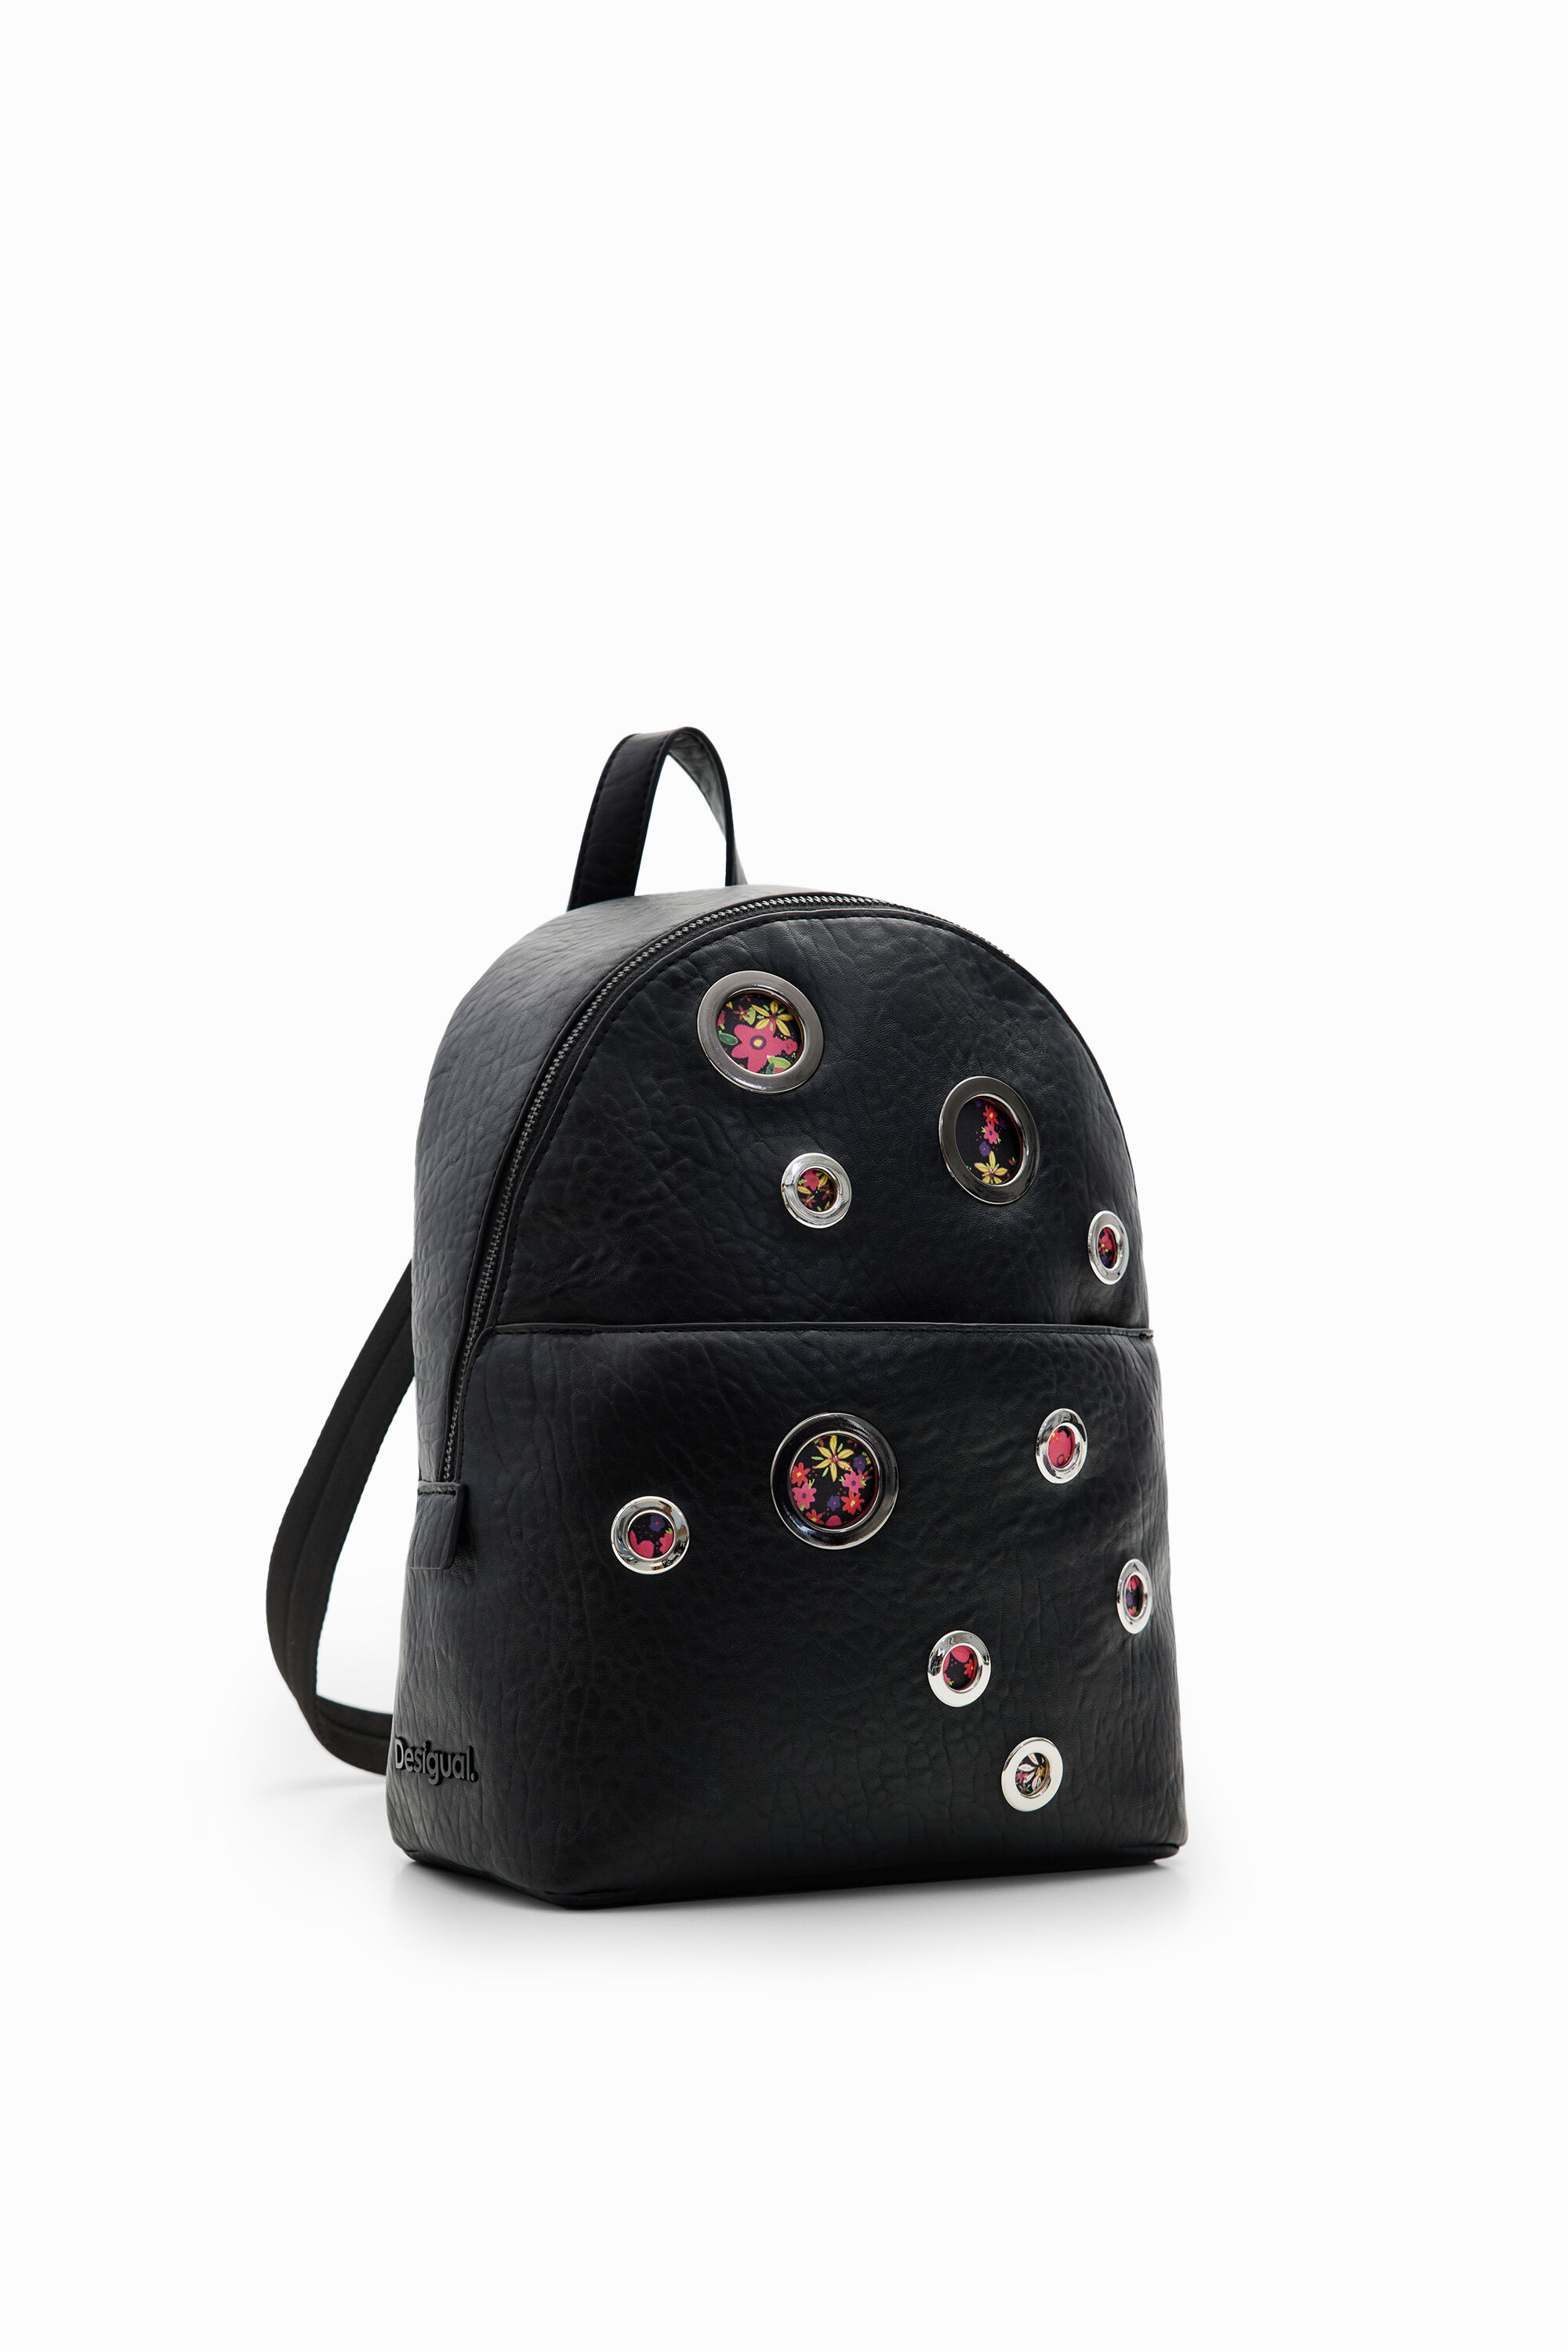 Desigual Small circles backpack